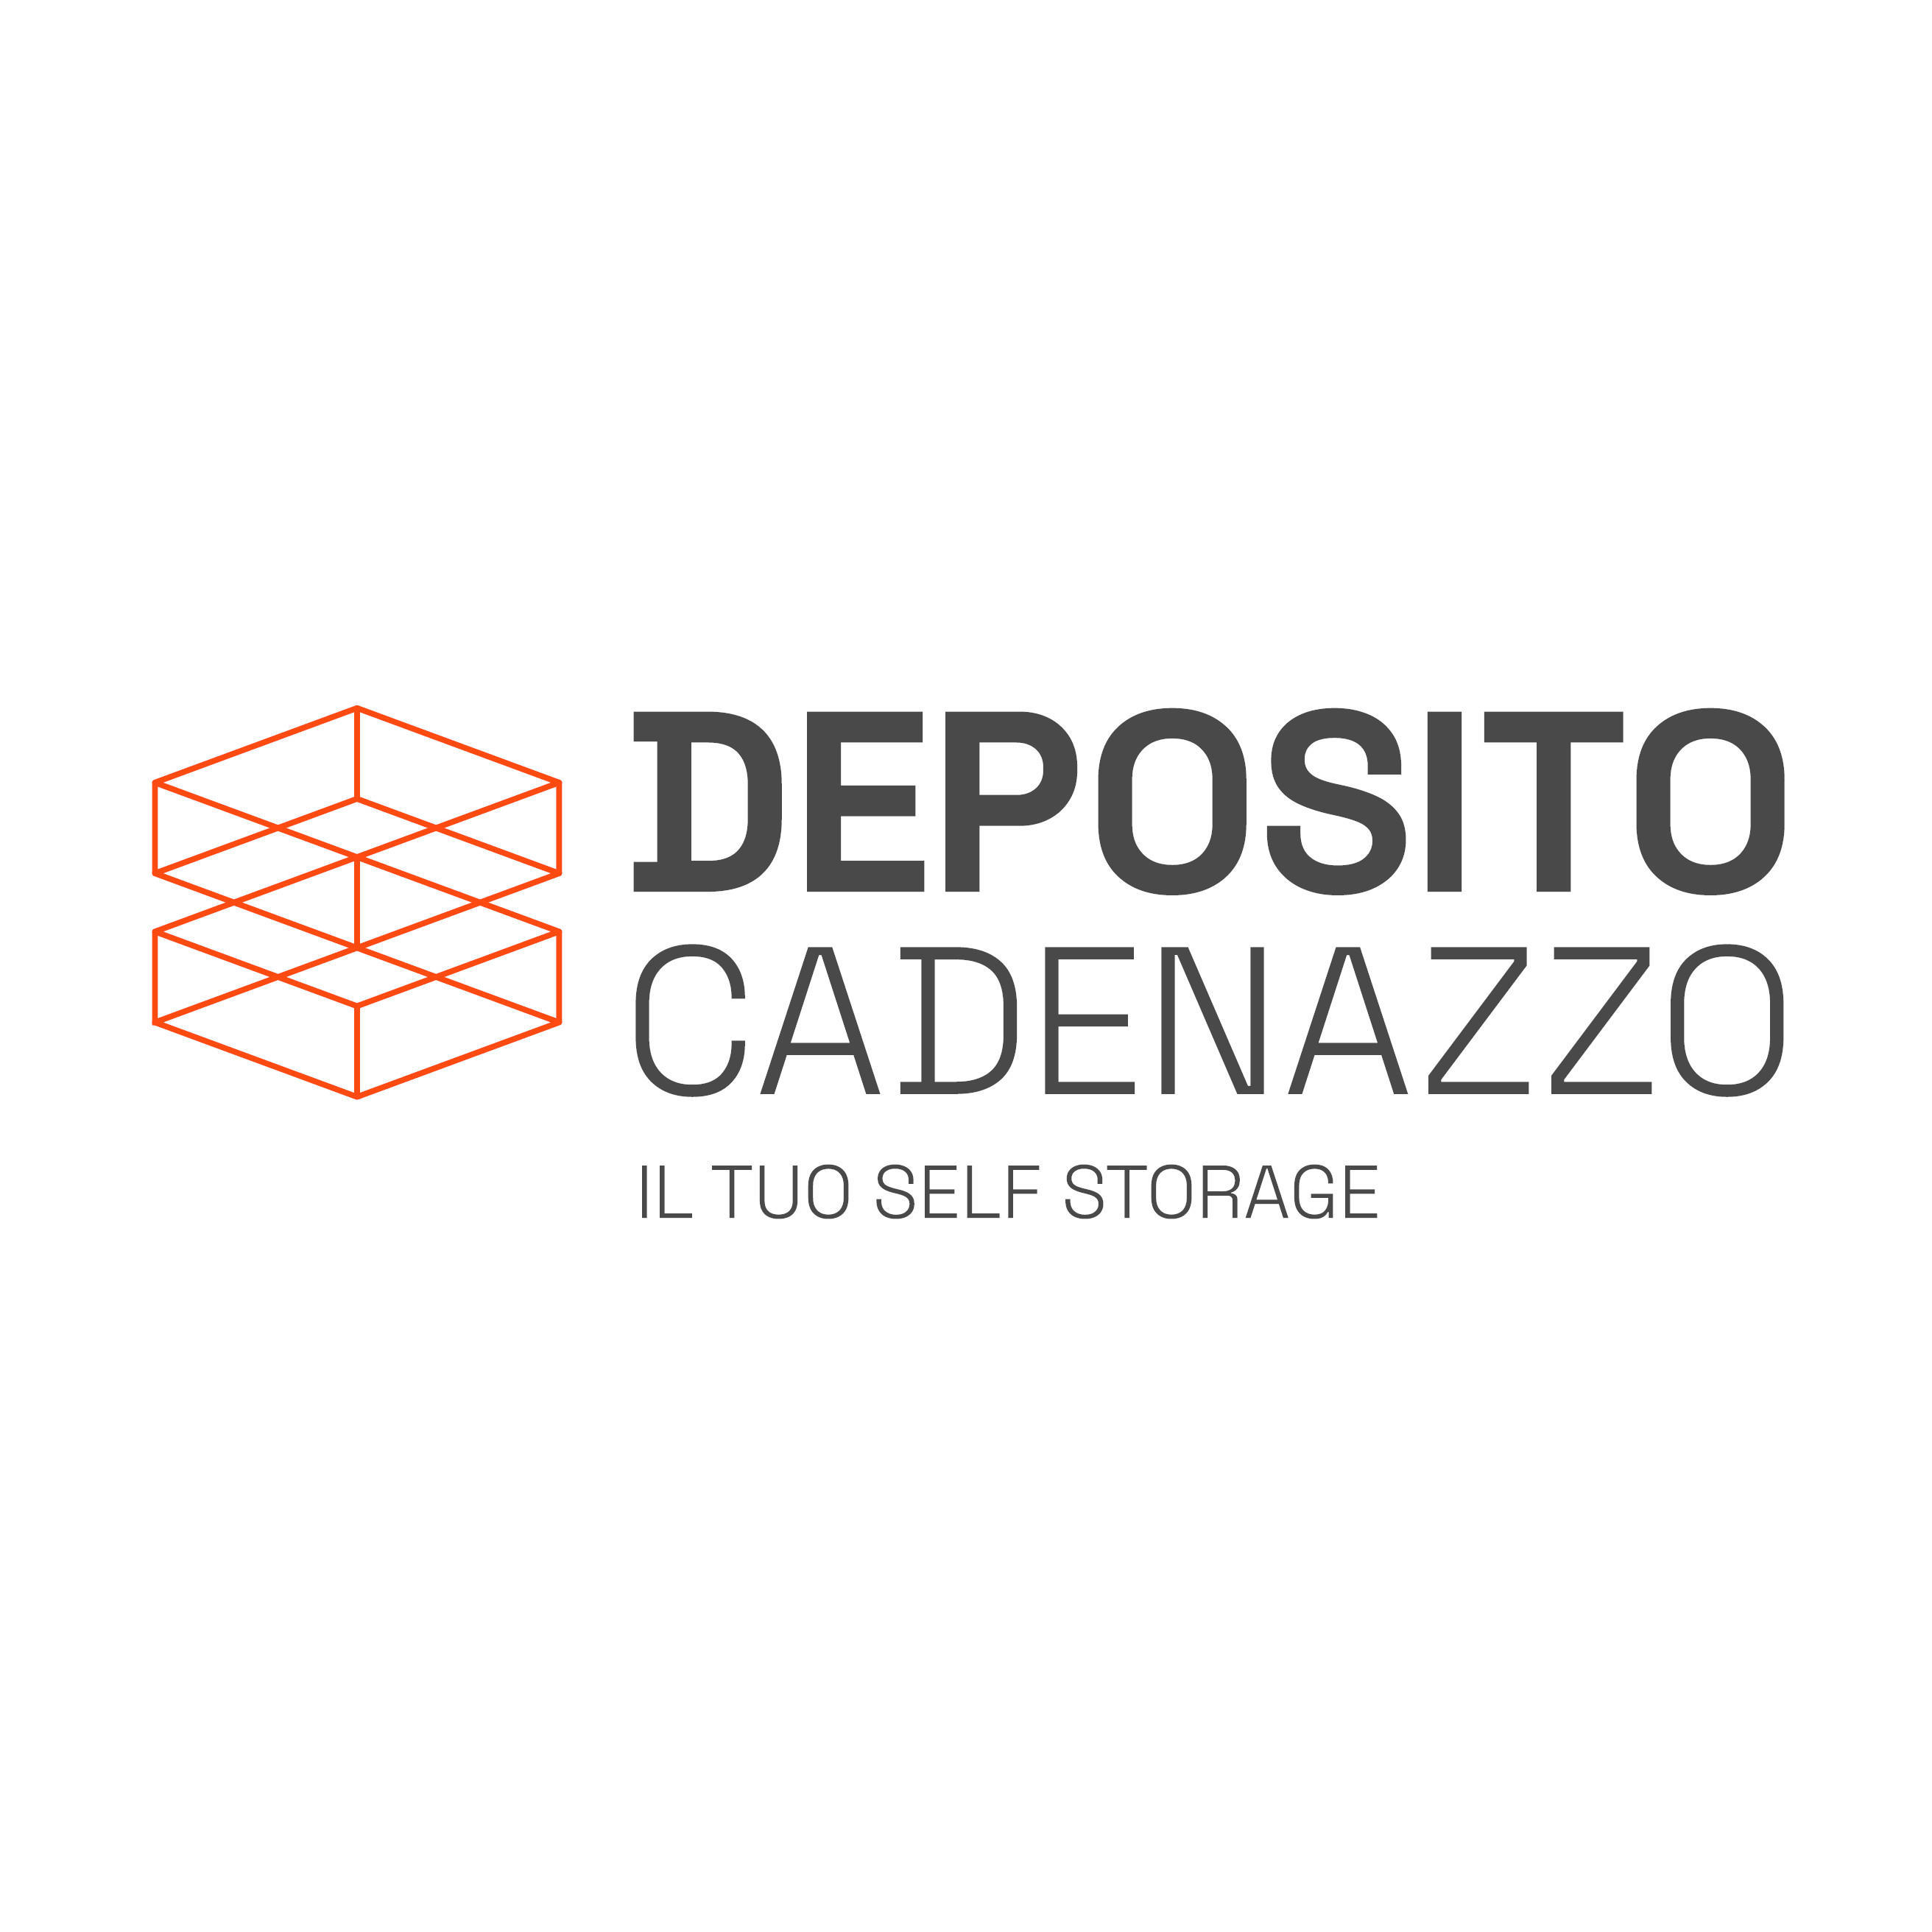 Deposito Cadenazzo _ Self-Sorage Logo